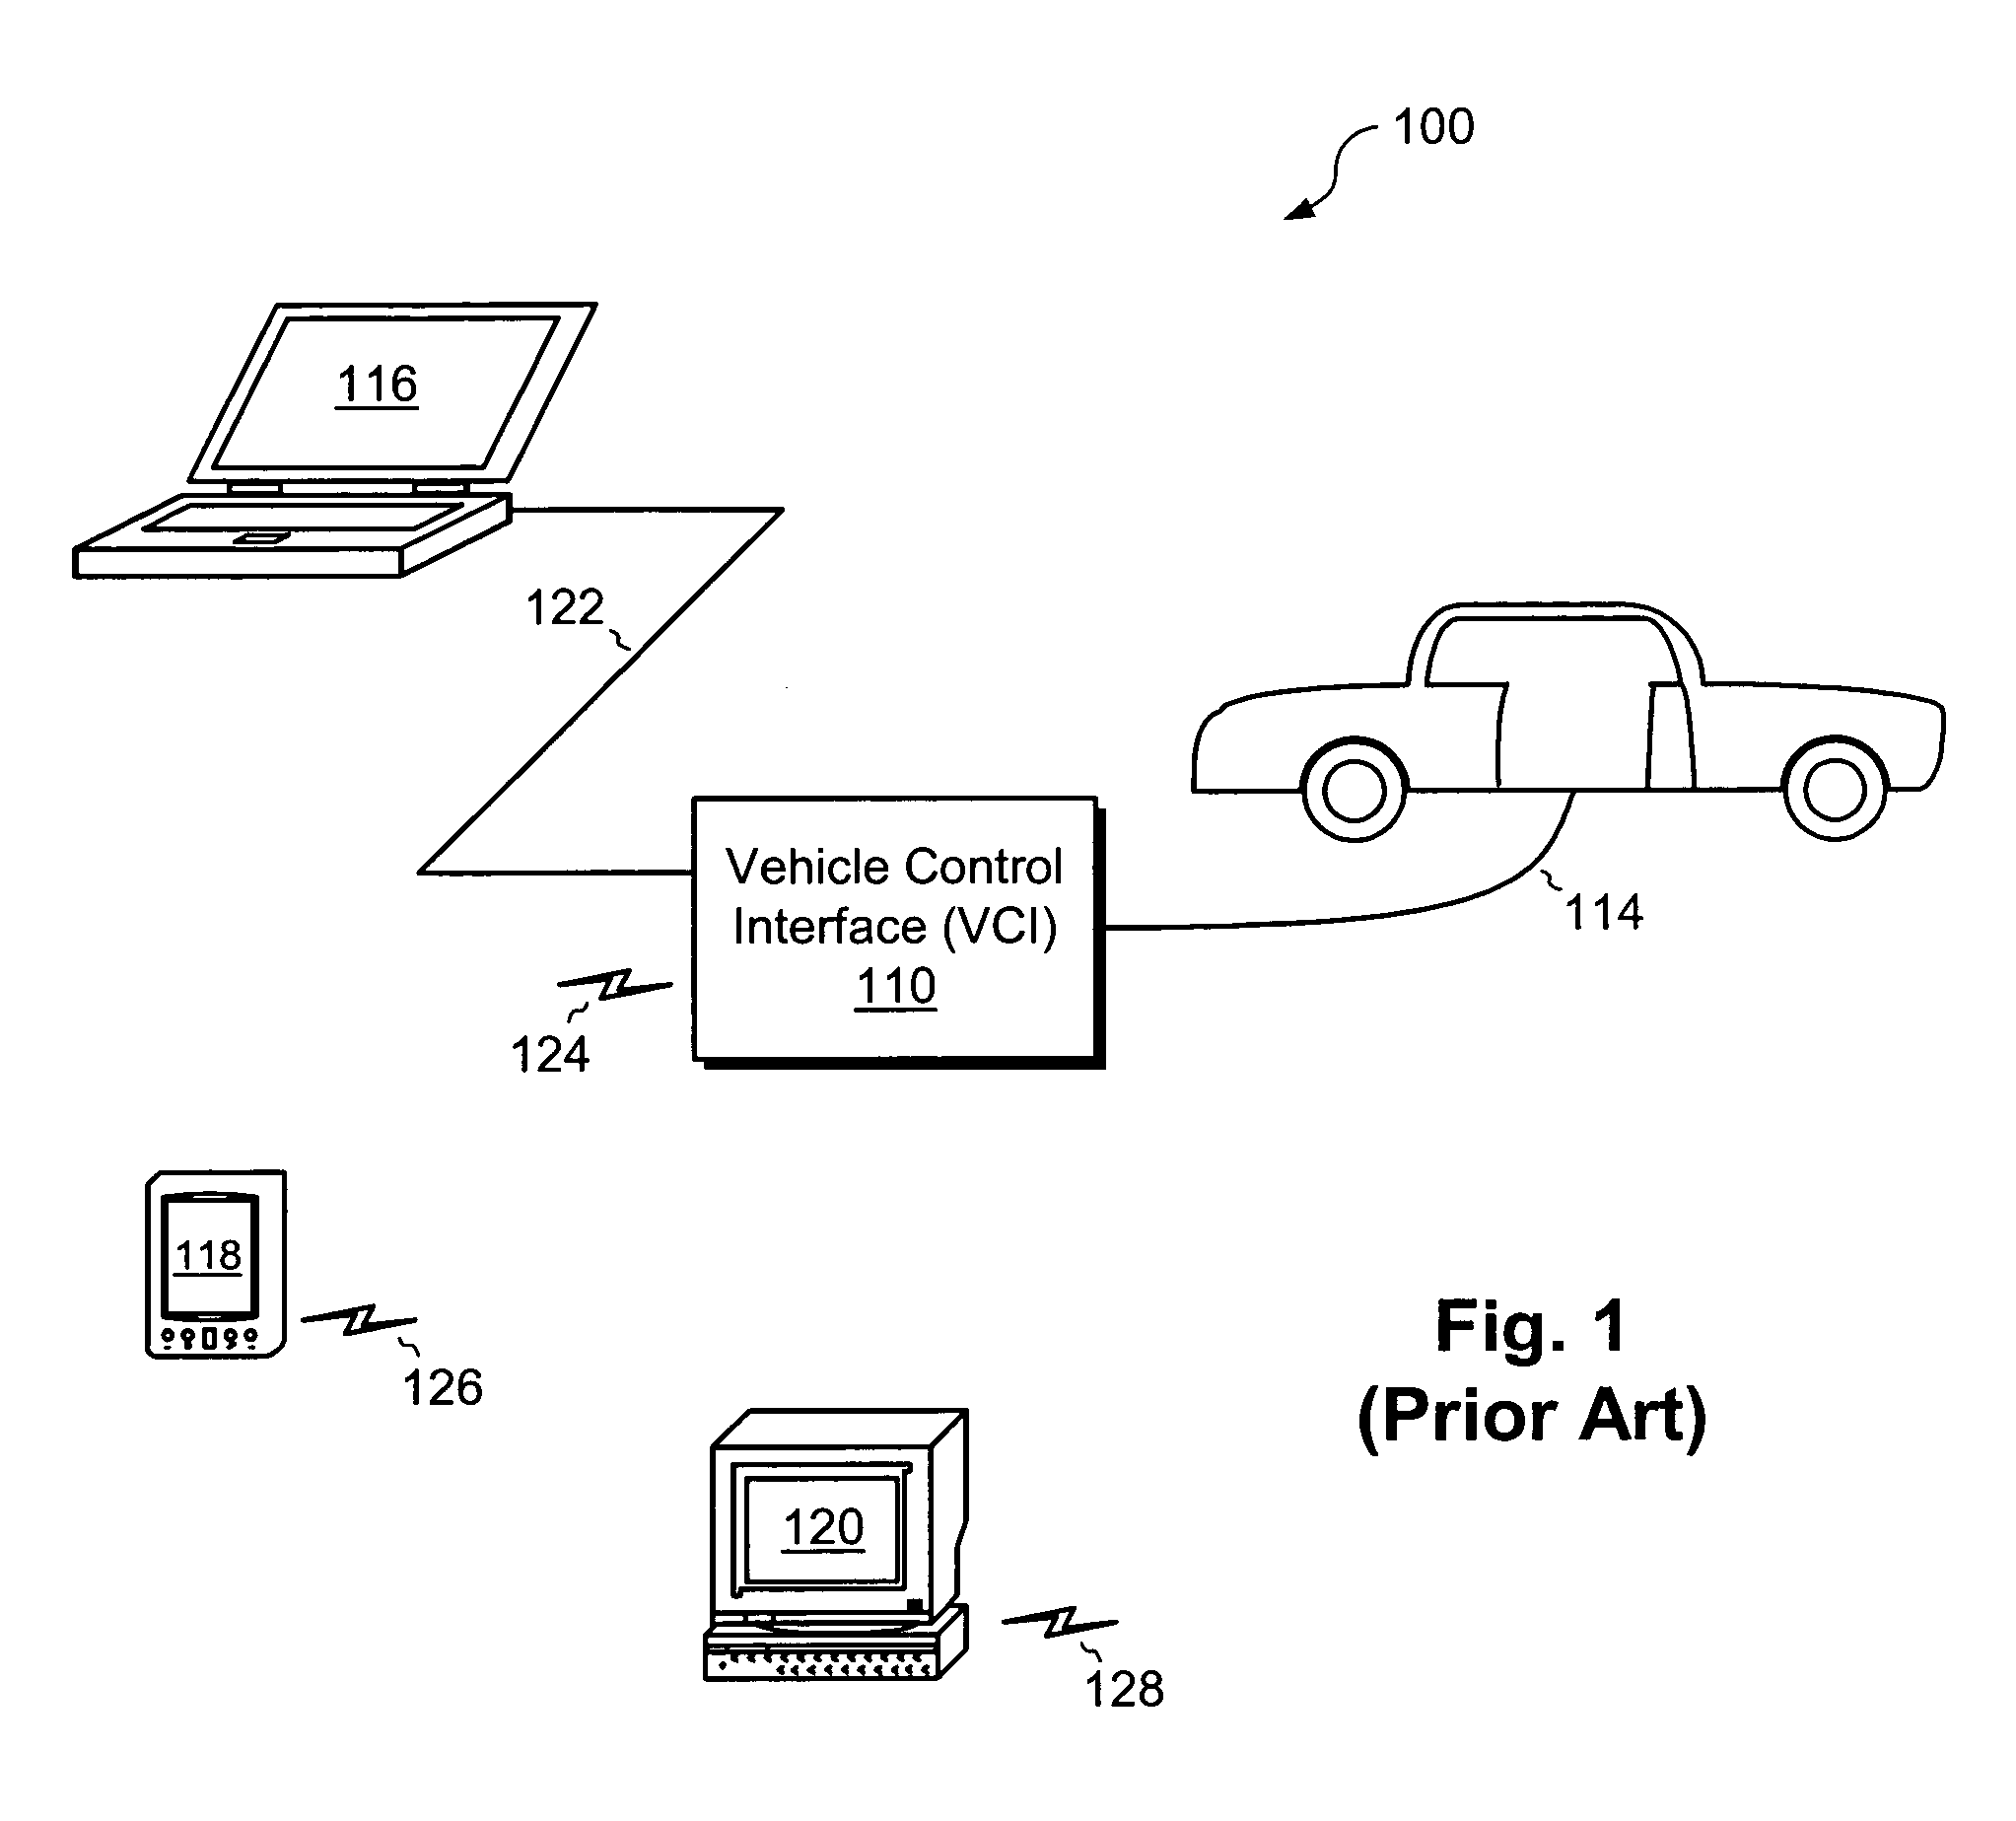 Vehicle communications interface